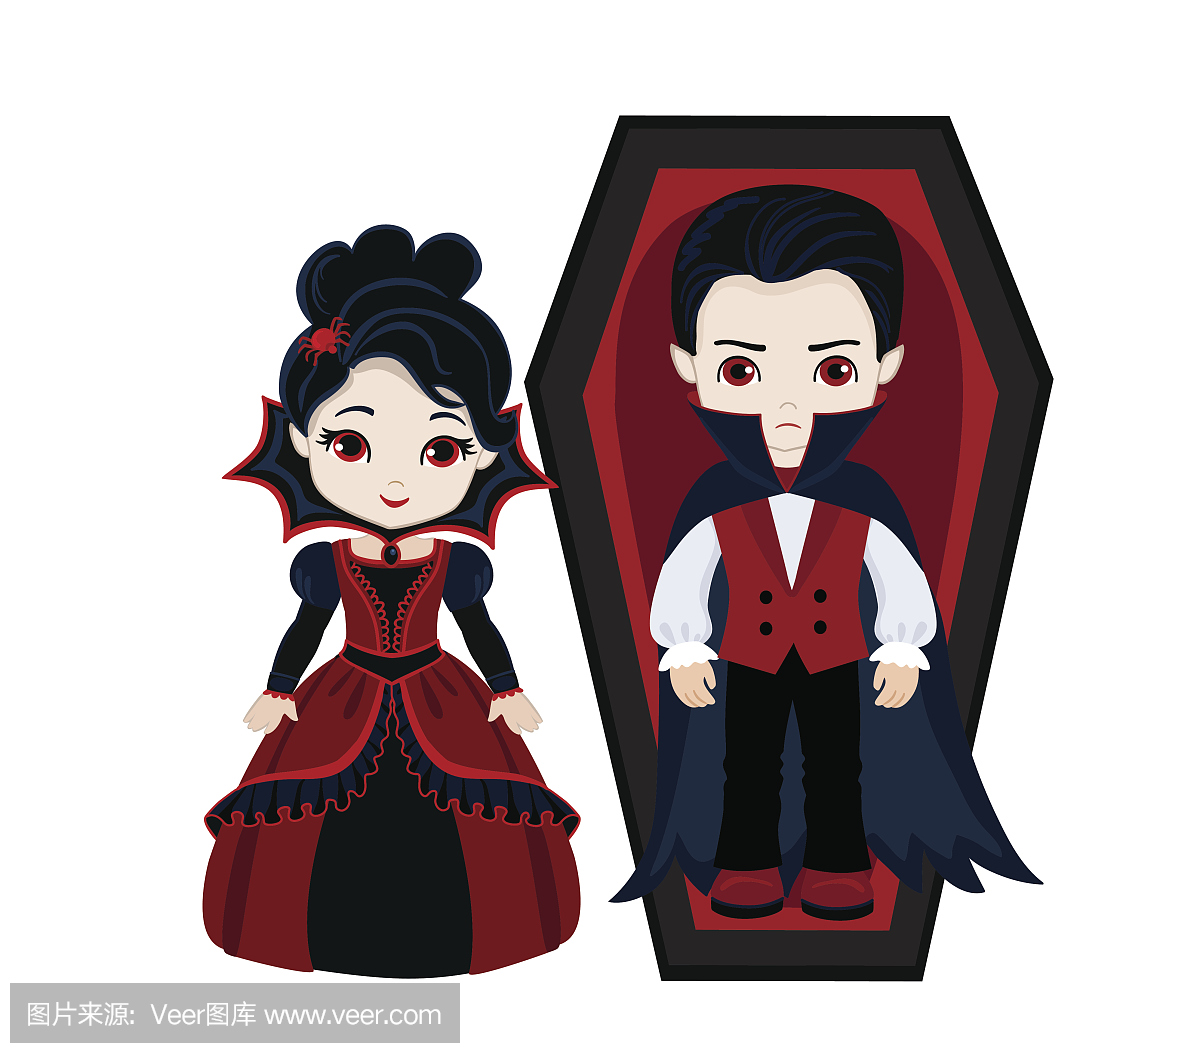 迷人的吸血鬼夫妇。男孩和女孩在吸血鬼服装。